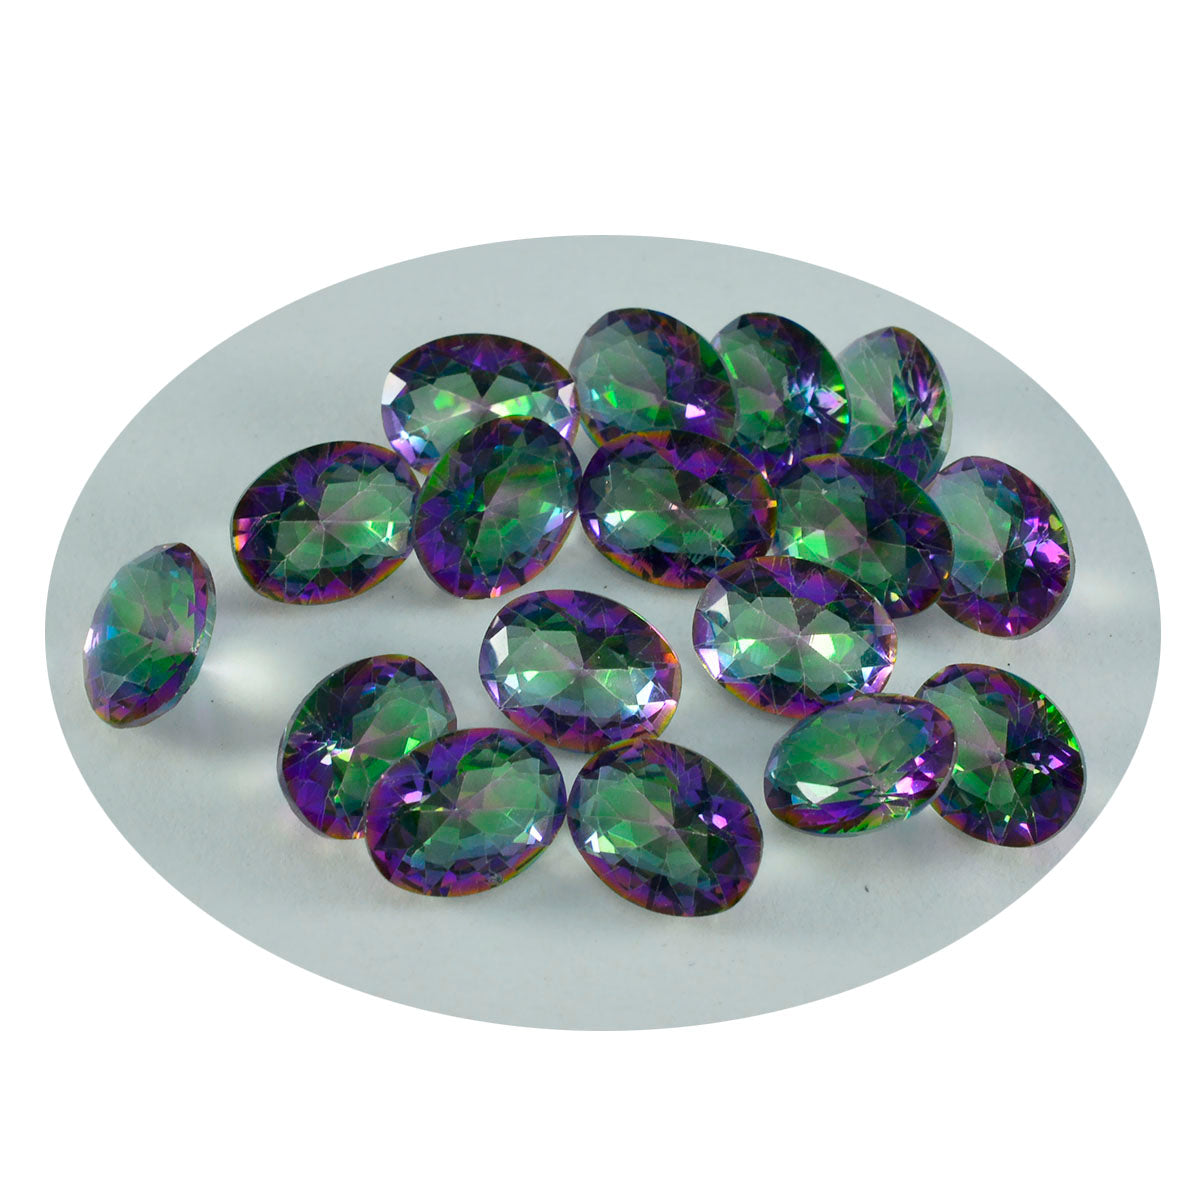 riyogems 1 шт. разноцветный мистический кварц ограненный 6x8 мм овальной формы хорошее качество свободный драгоценный камень